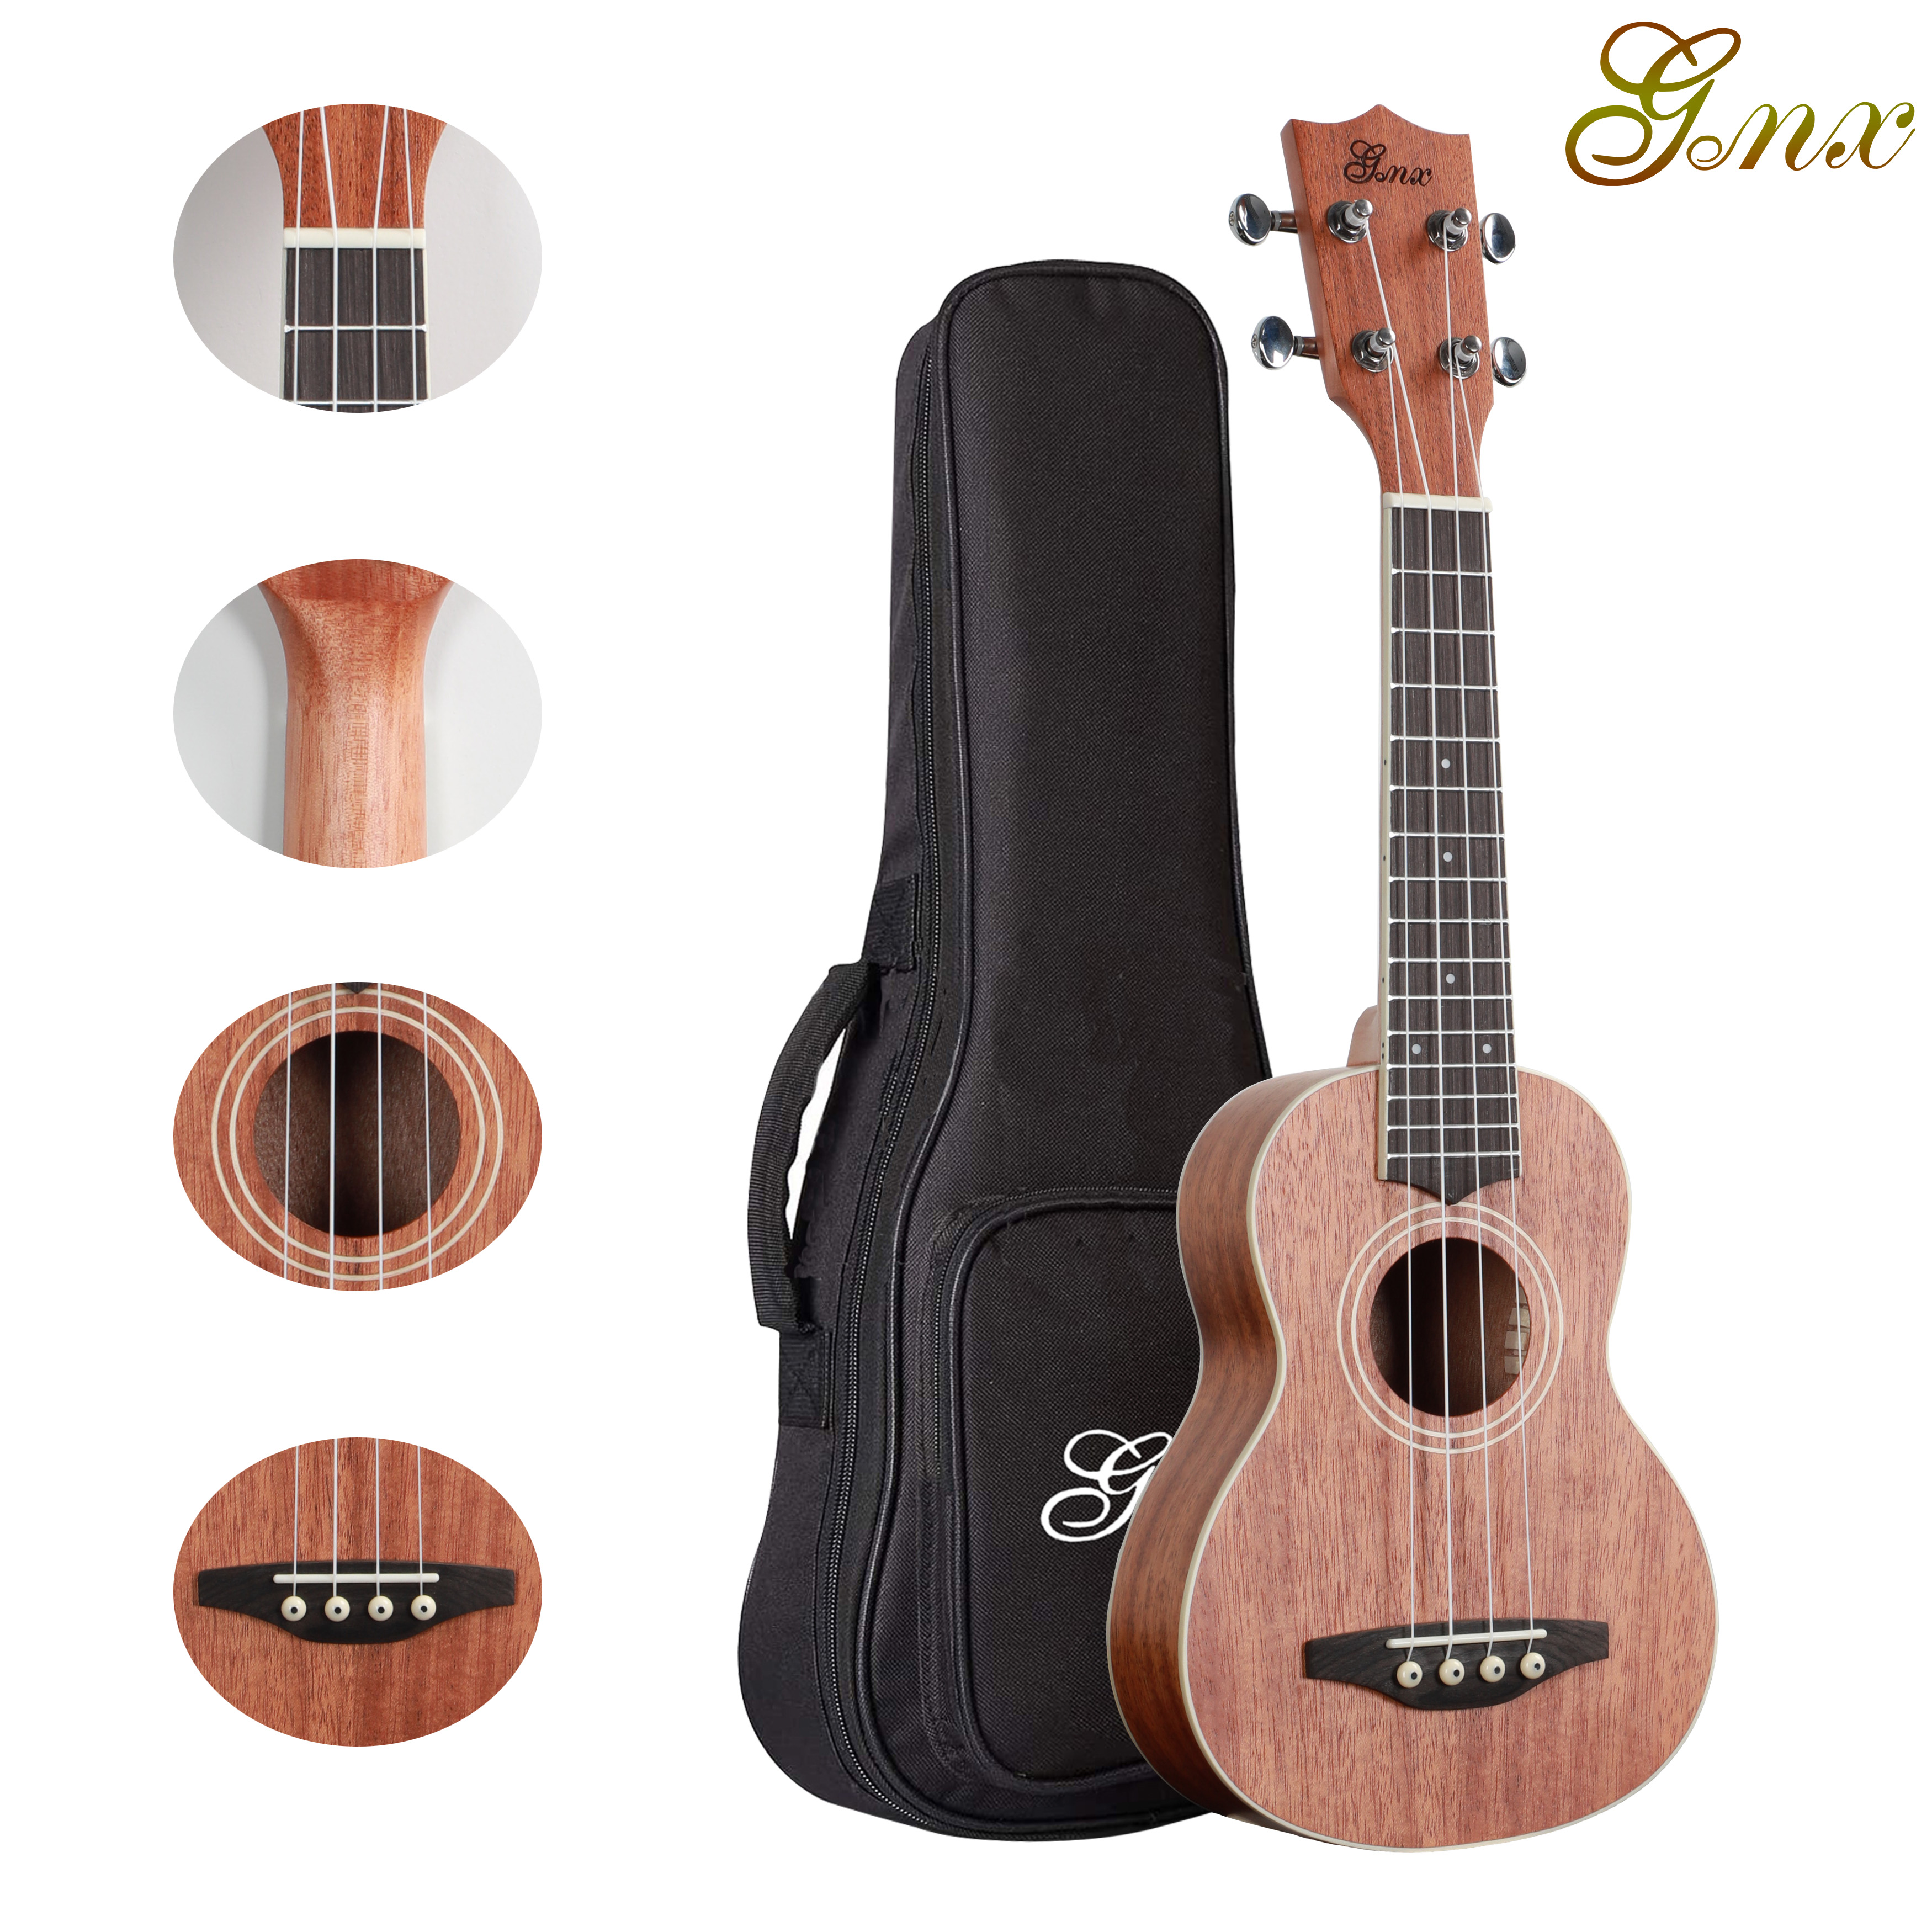 Made in China high quality ukulele of Soprano